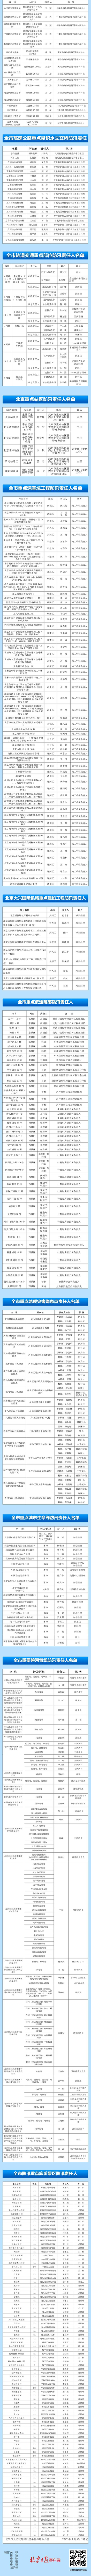 重点地区全覆盖！2022年北京防汛抗旱相关责任人公示名单